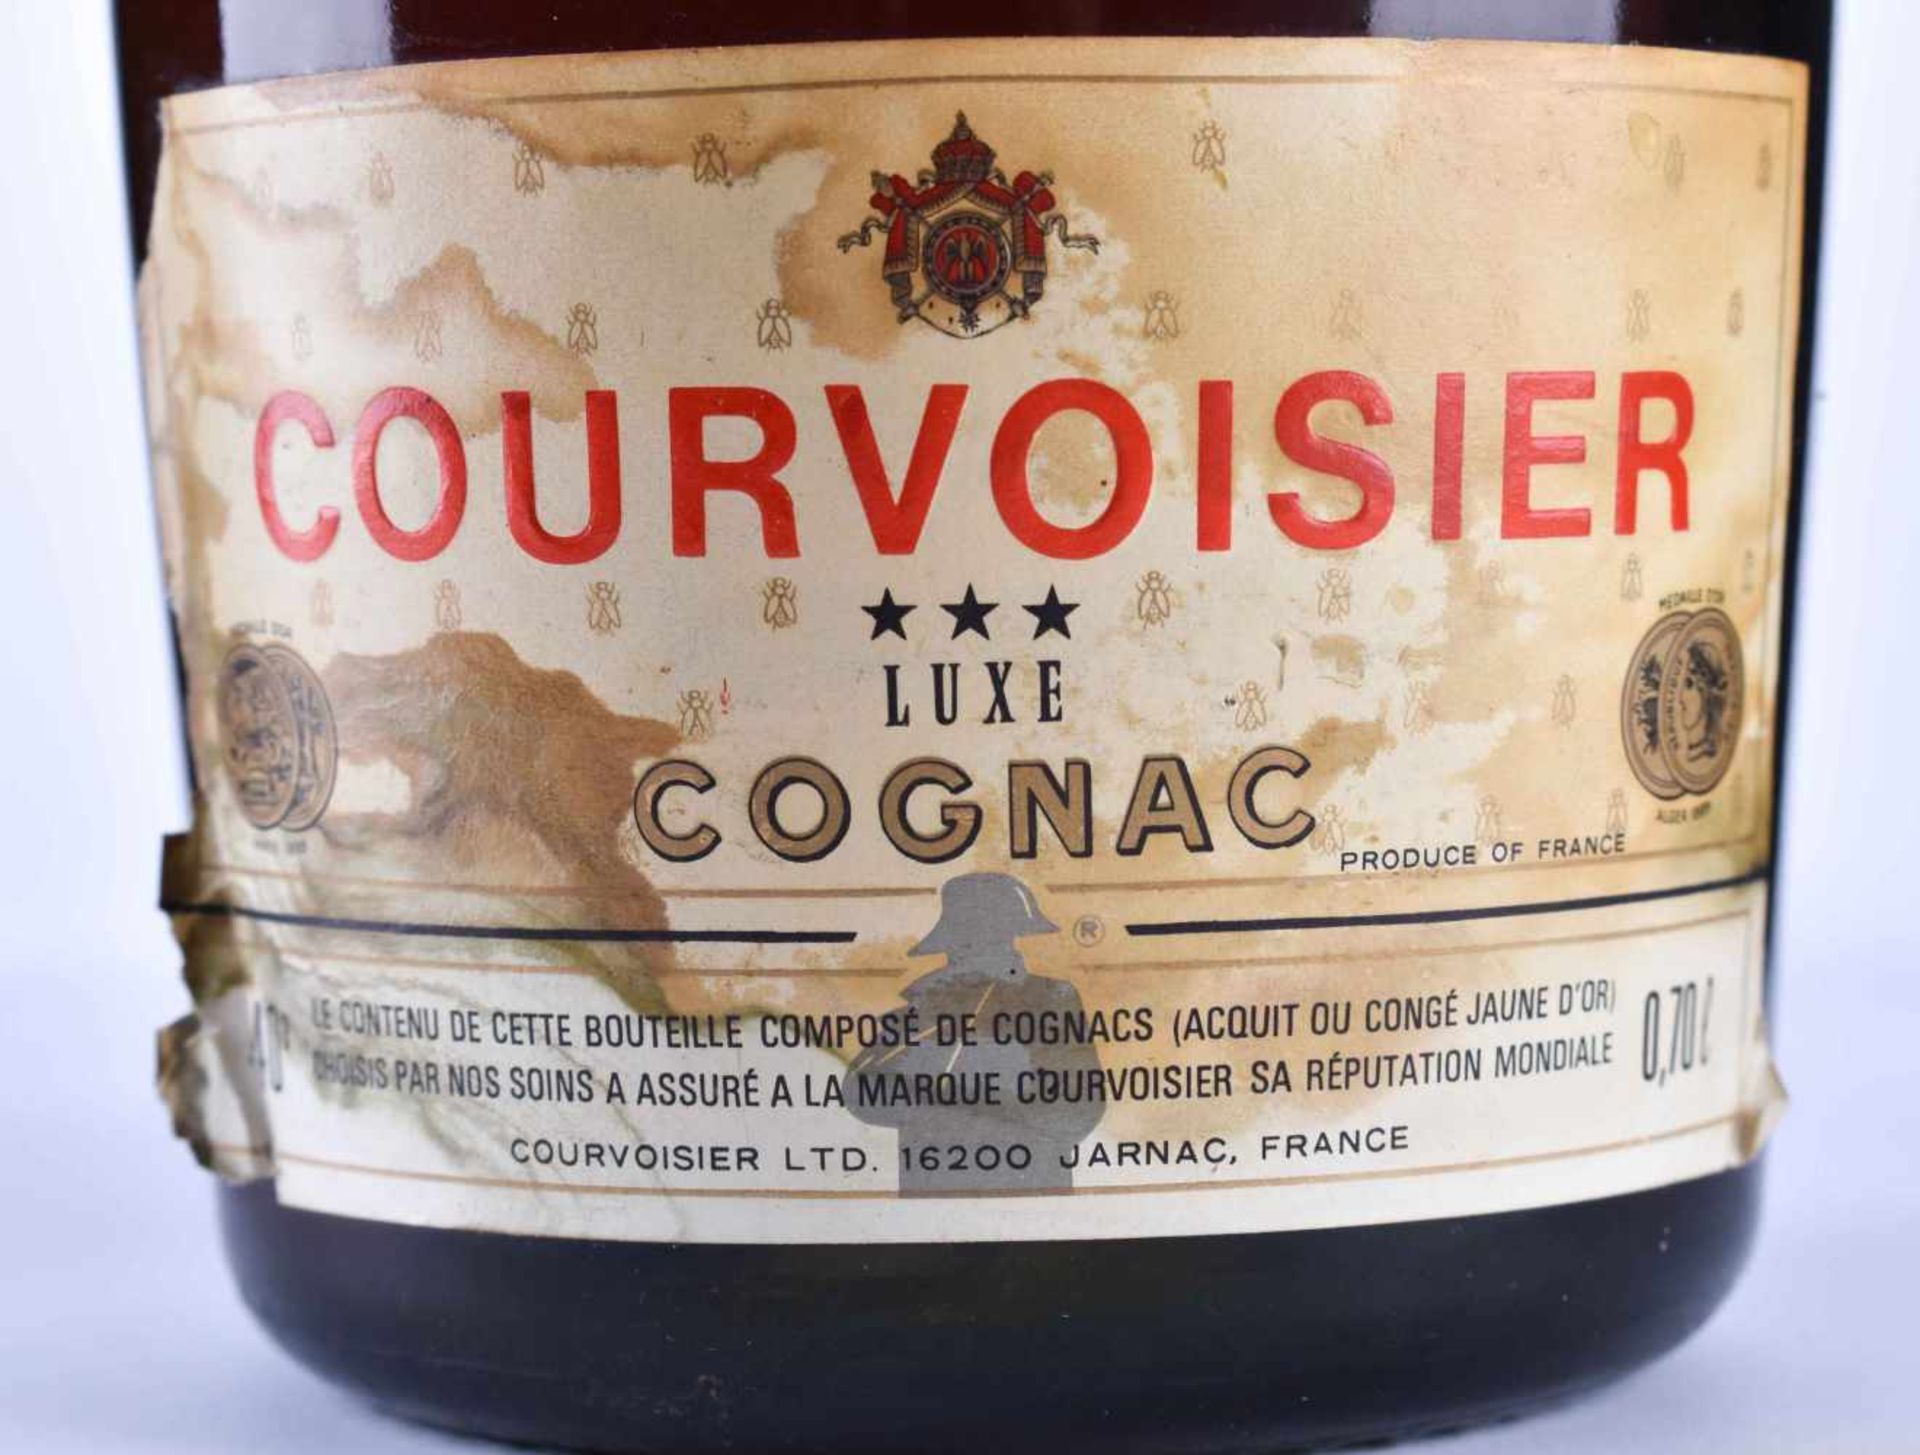 Courvoisier Luxe cognac around 1970 - Image 2 of 3